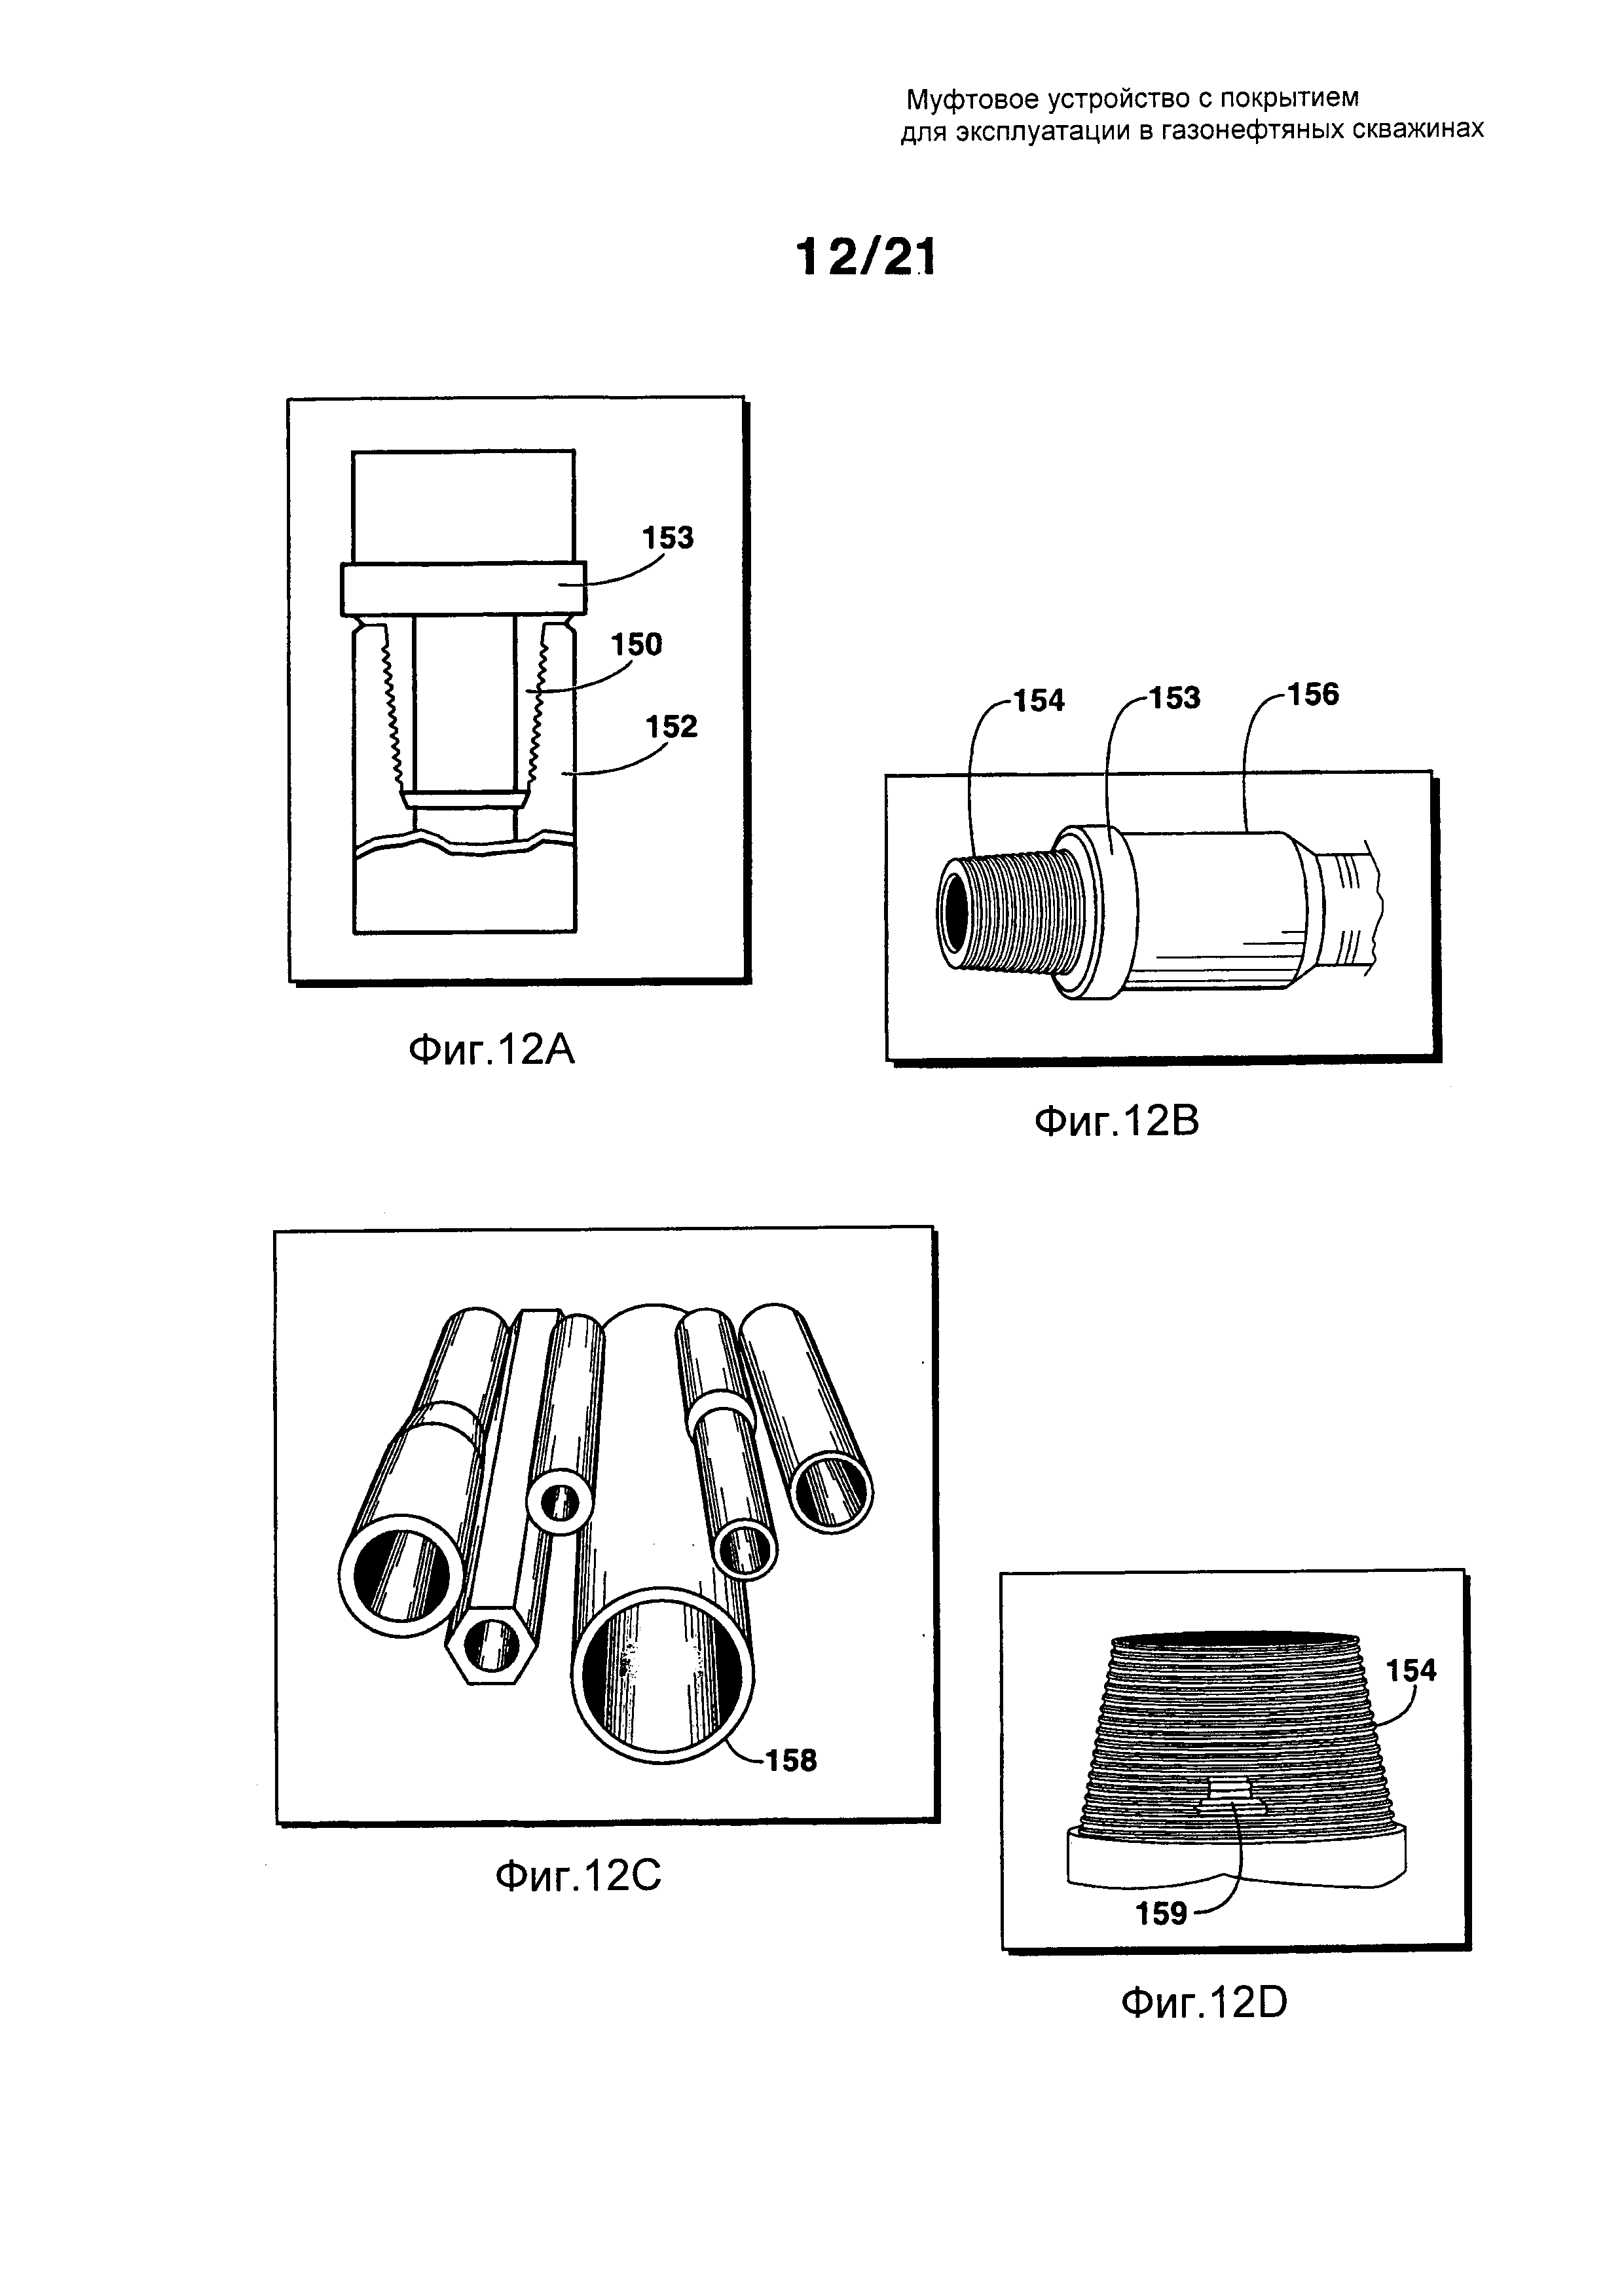 Муфтовое устройство с покрытием для эксплуатации в газонефтяных скважинах